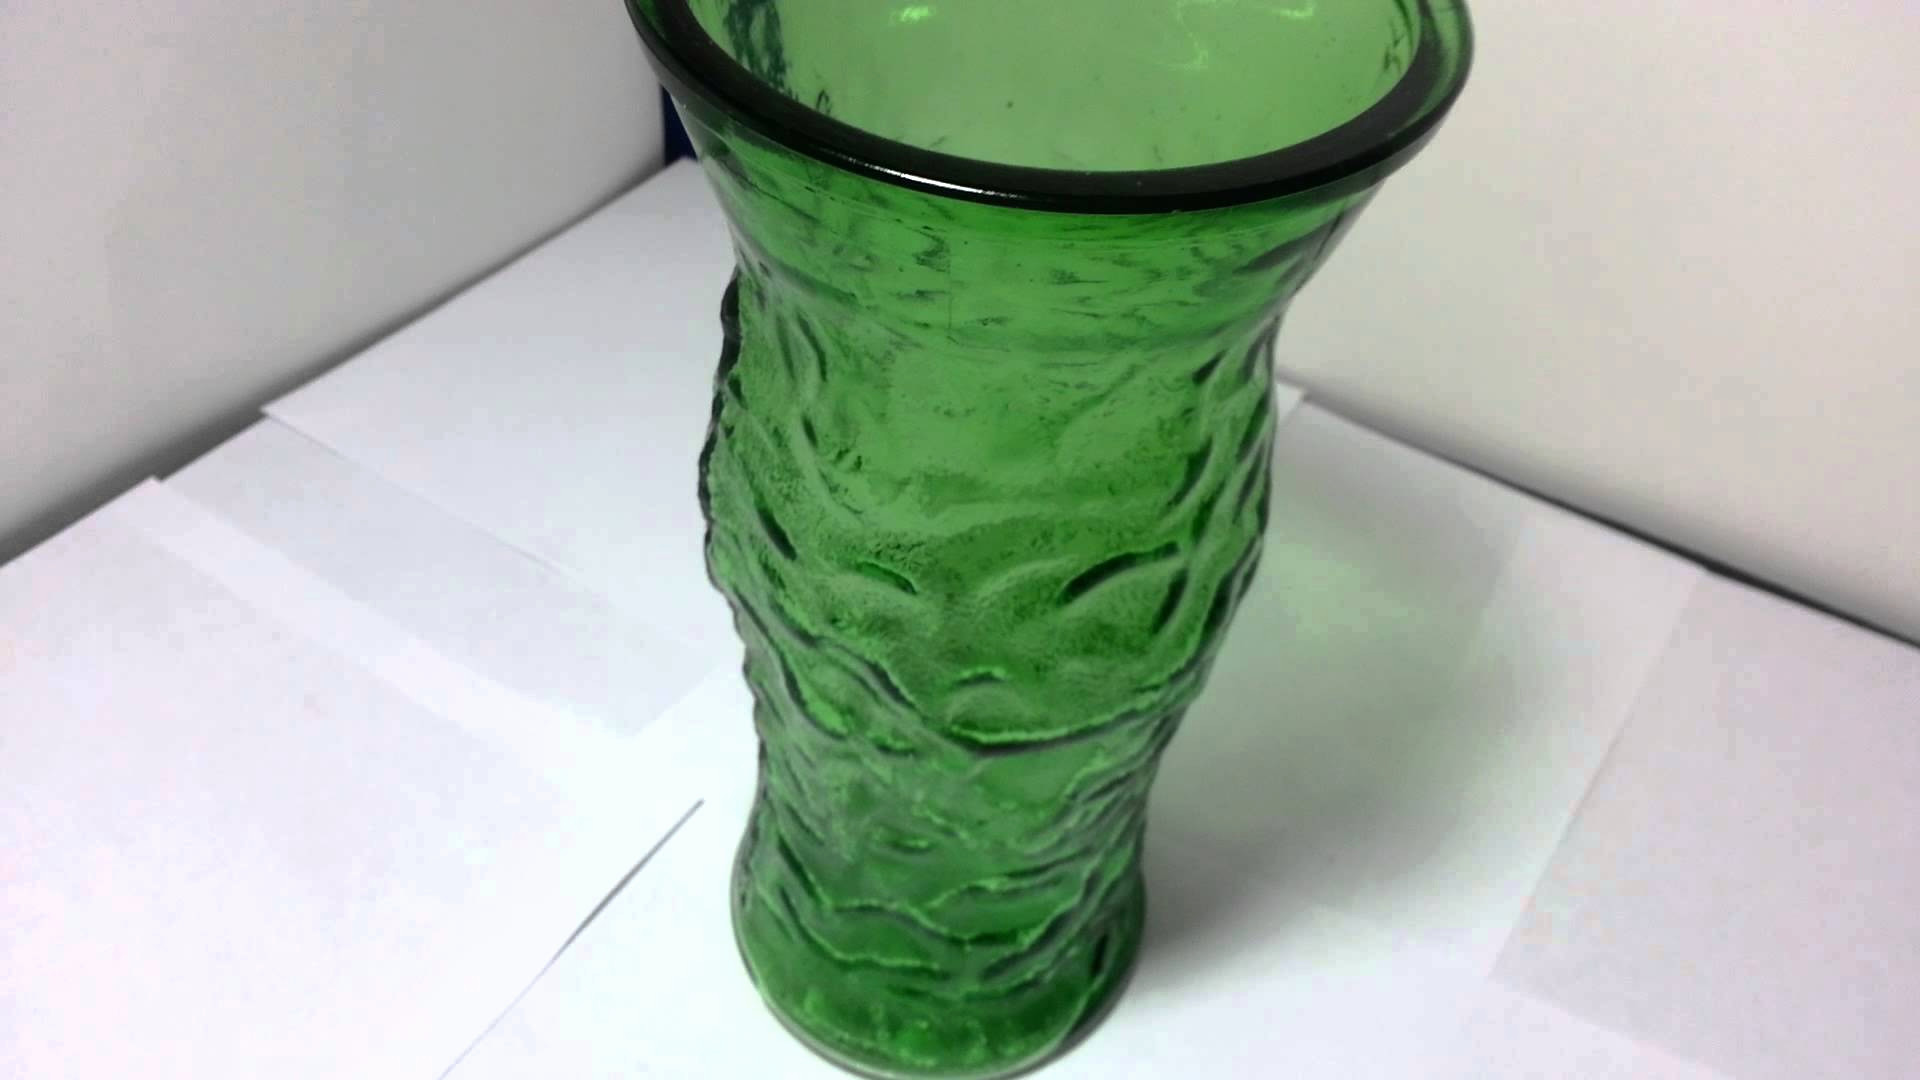 12 Elegant E O Brody Glass Vase 2024 free download e o brody glass vase of vase company vase and cellar image avorcor com regarding antique green gl vases awesome e o brody pany